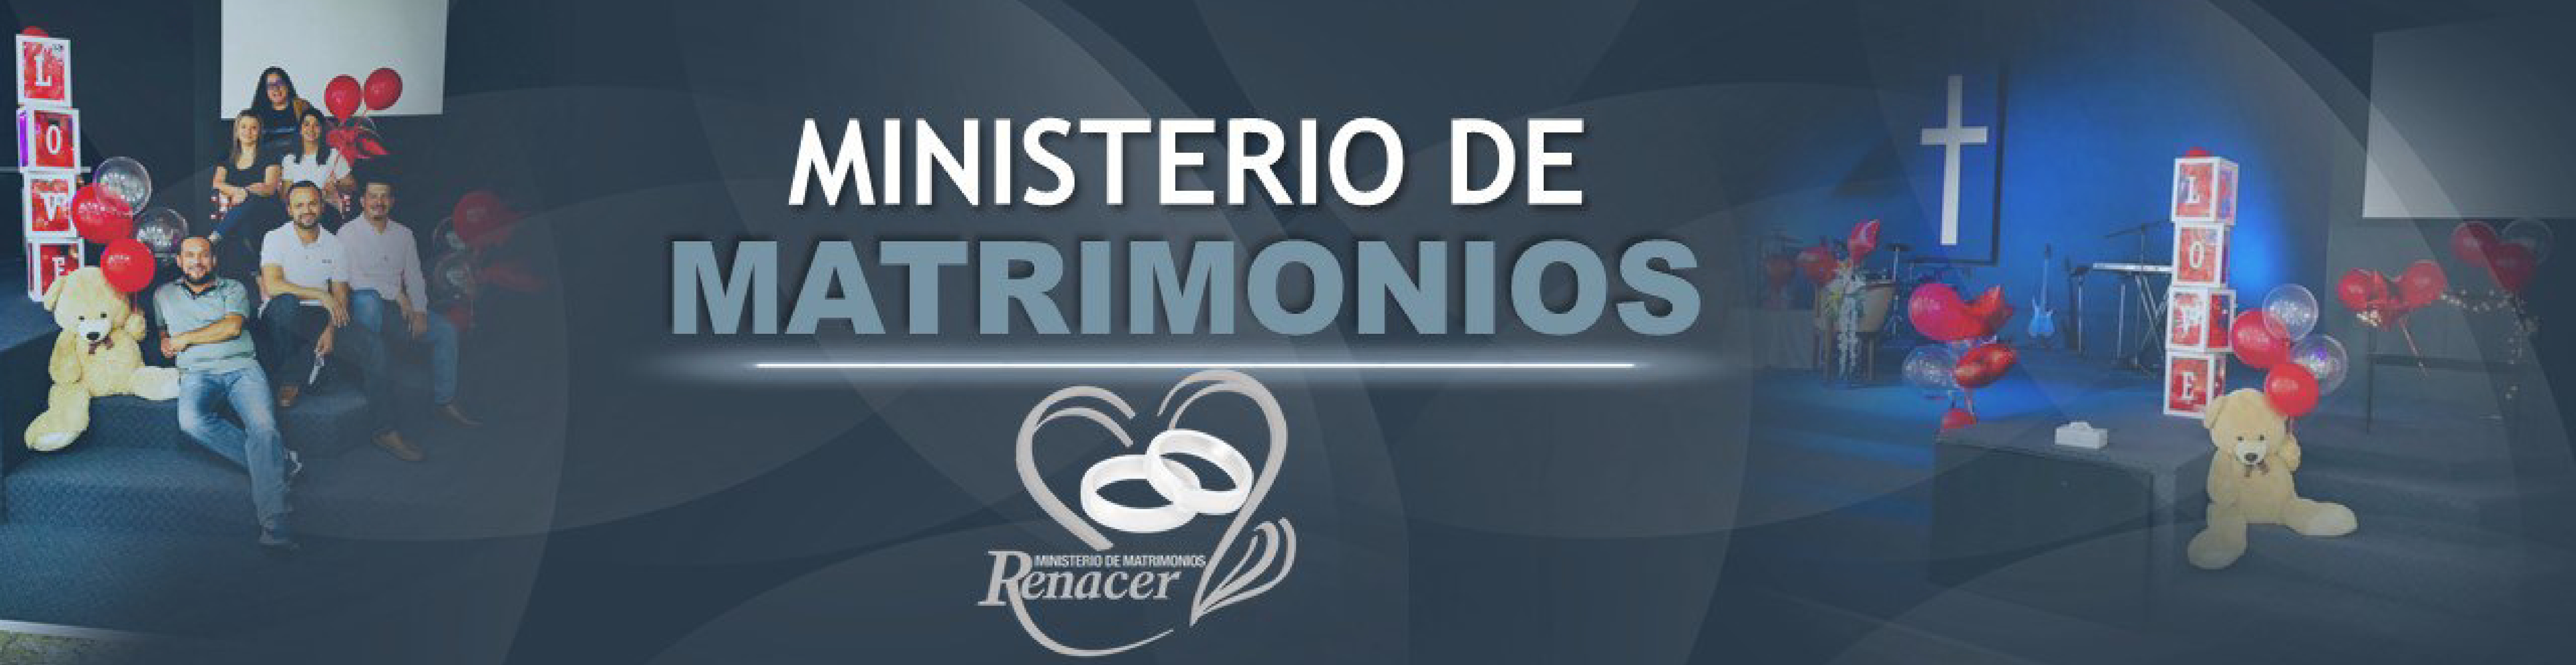 Centro Cristiano Renacer 3